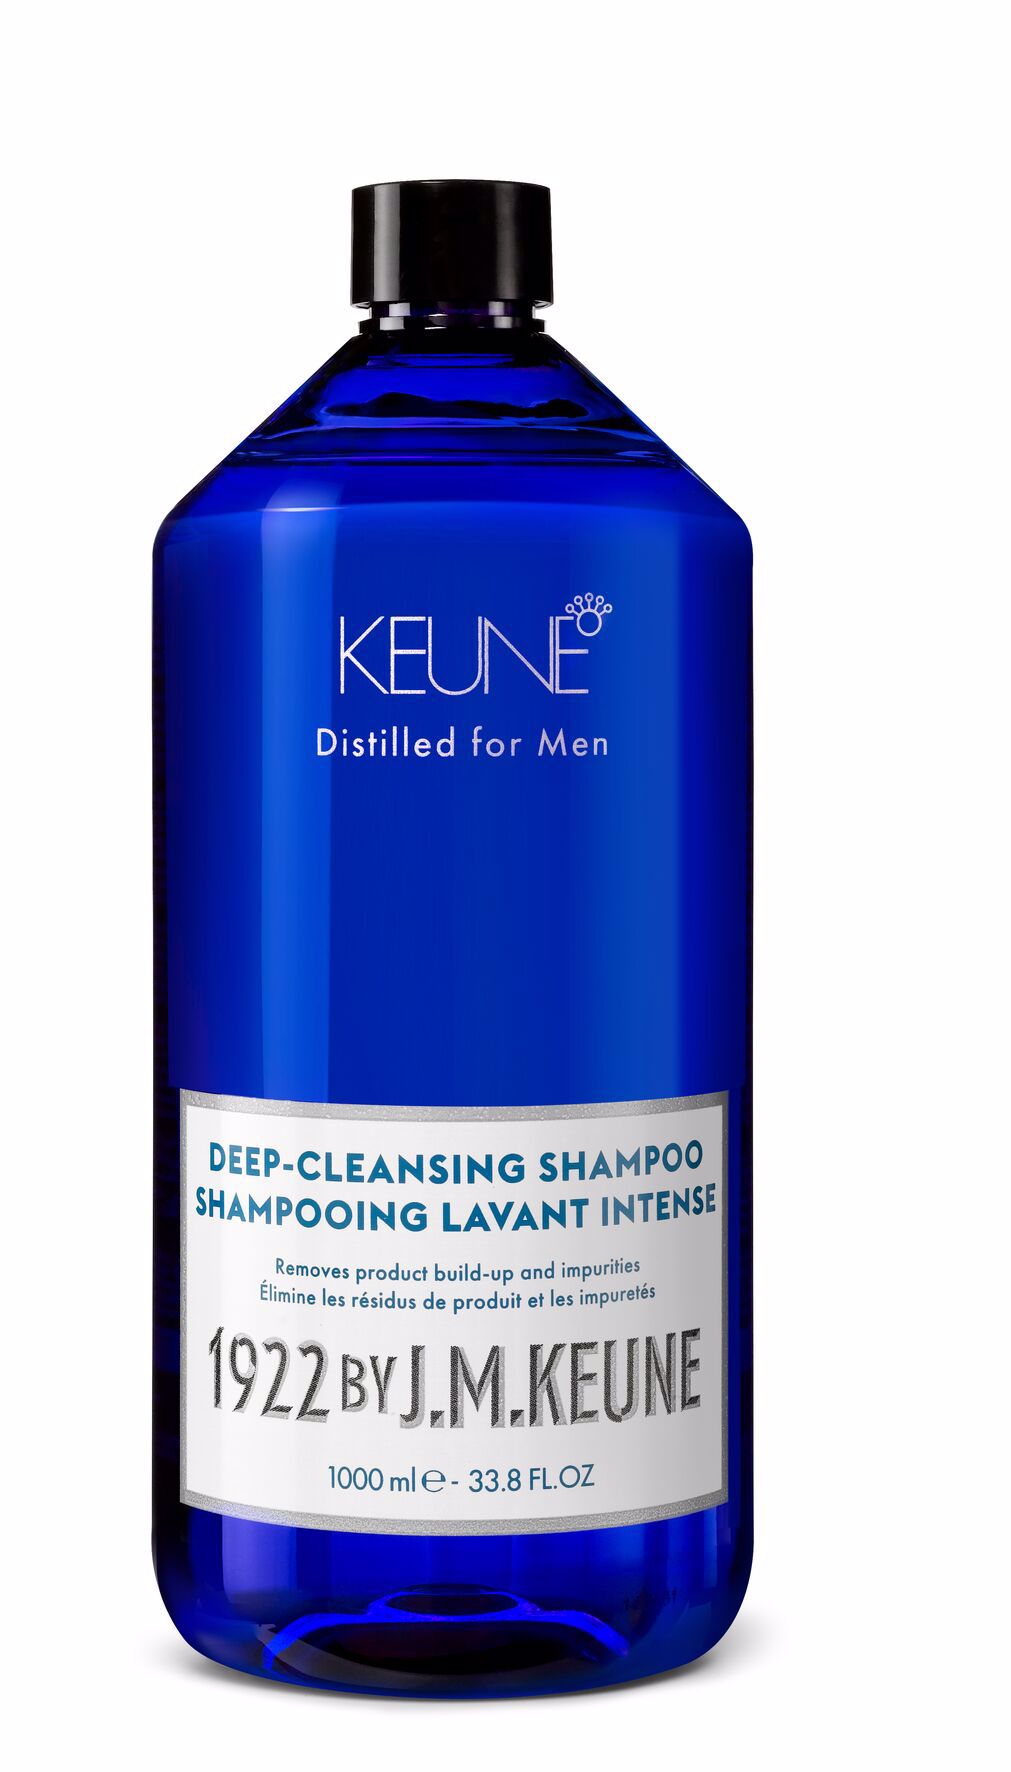 Le Deep-Cleansing Shampoo pour hommes nettoie intensément et hydrate. La créatine et l'extrait de bambou renforcent les cheveux, idéal pour les cheveux gras. Sur keune.ch.